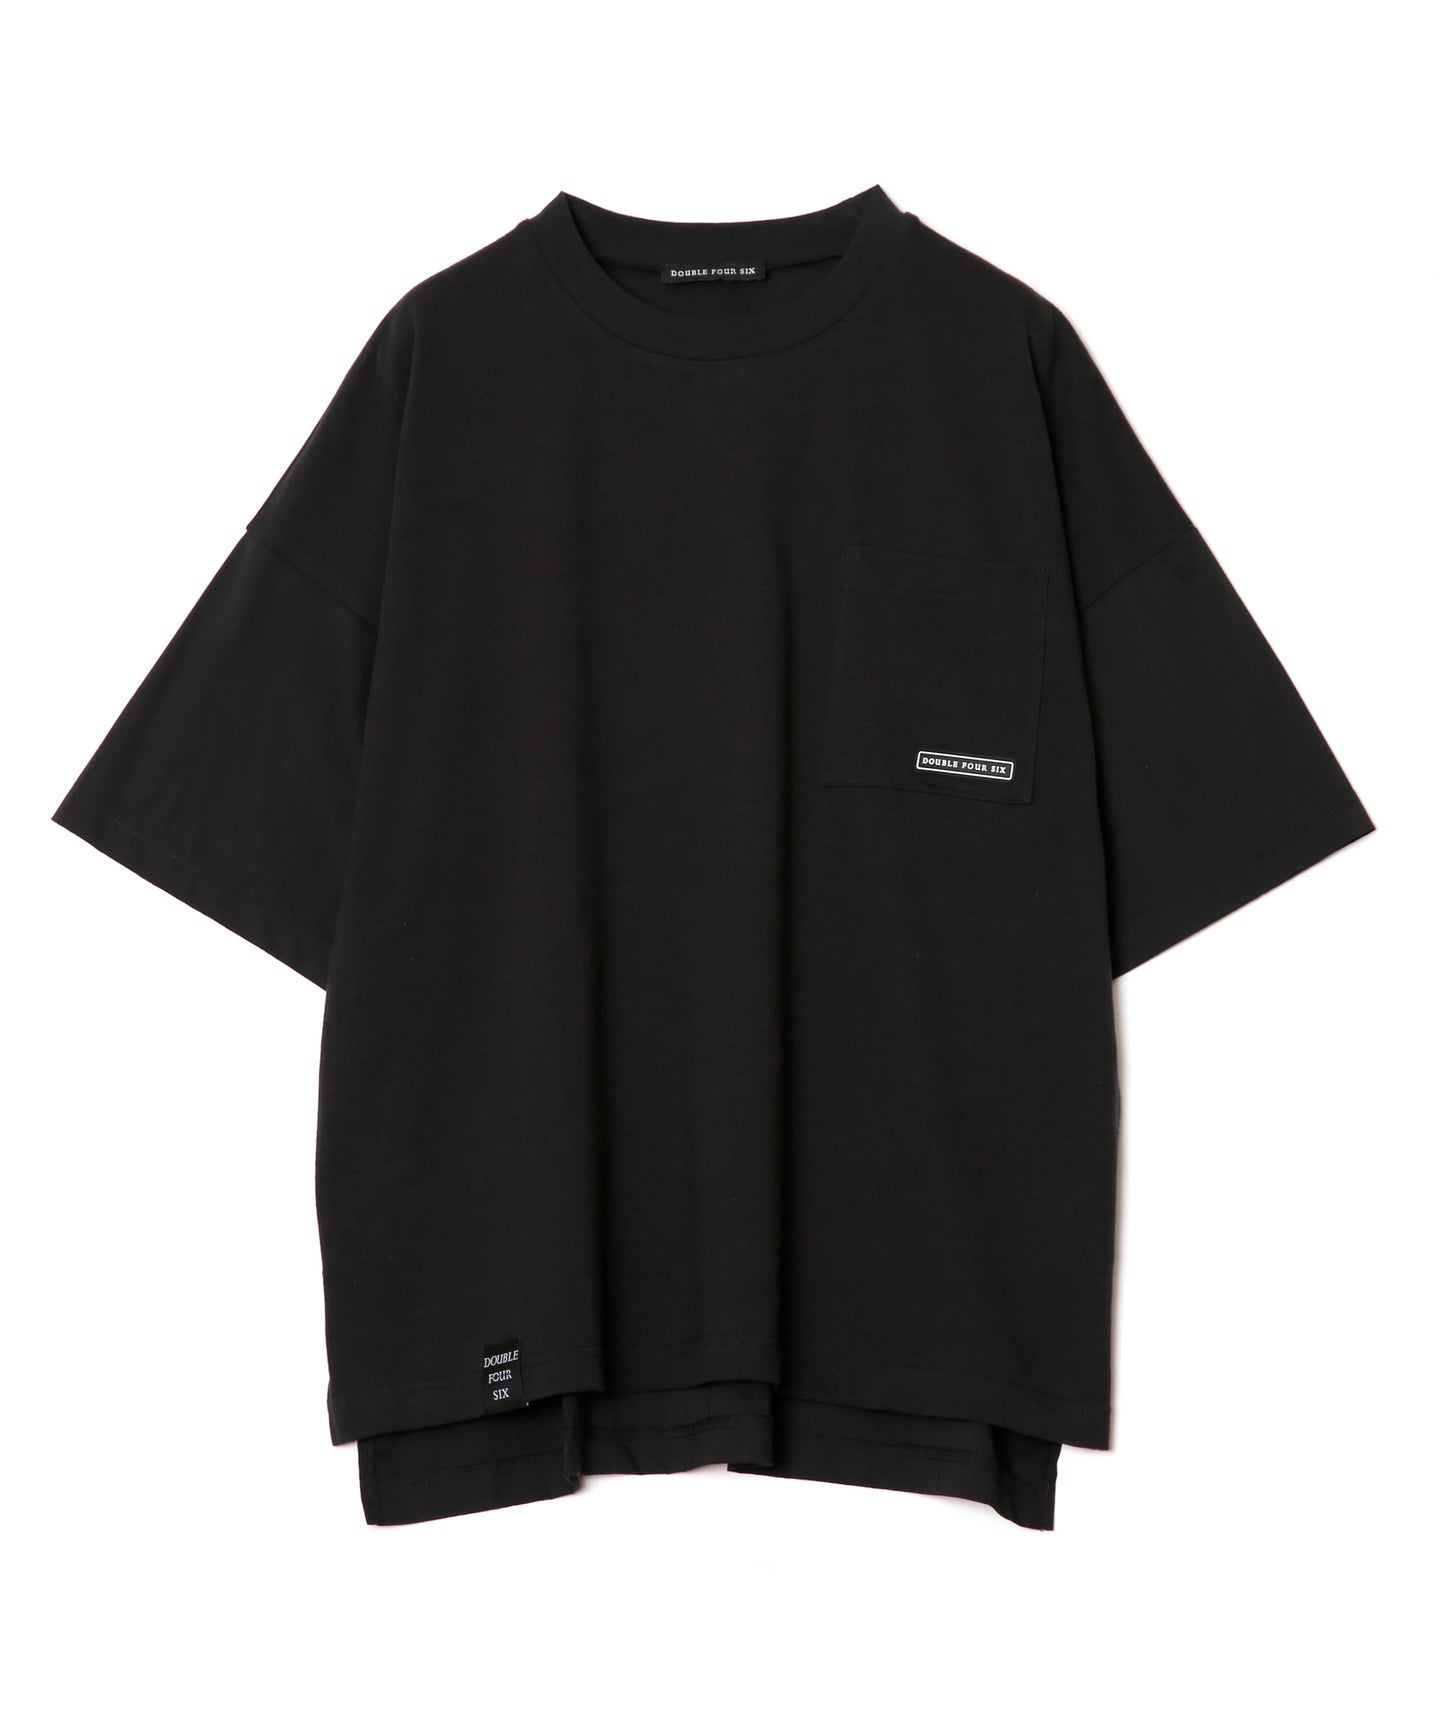 Multi-material T-shirt Black